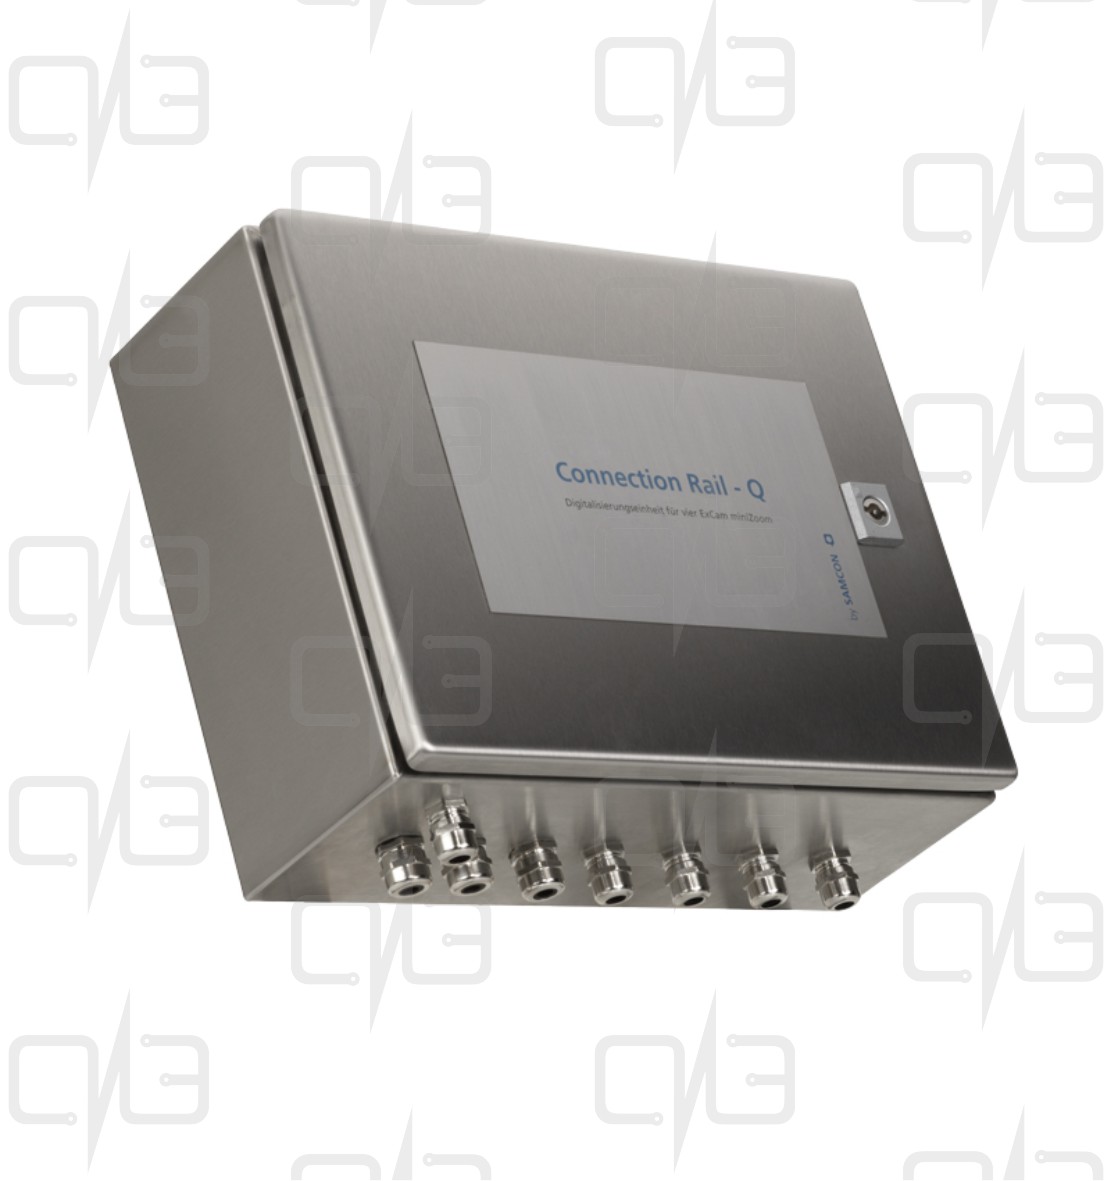 T05-Q-00-110 Connection Rail - Q Видеосервер с источником питания и точкой доступа Ethernet